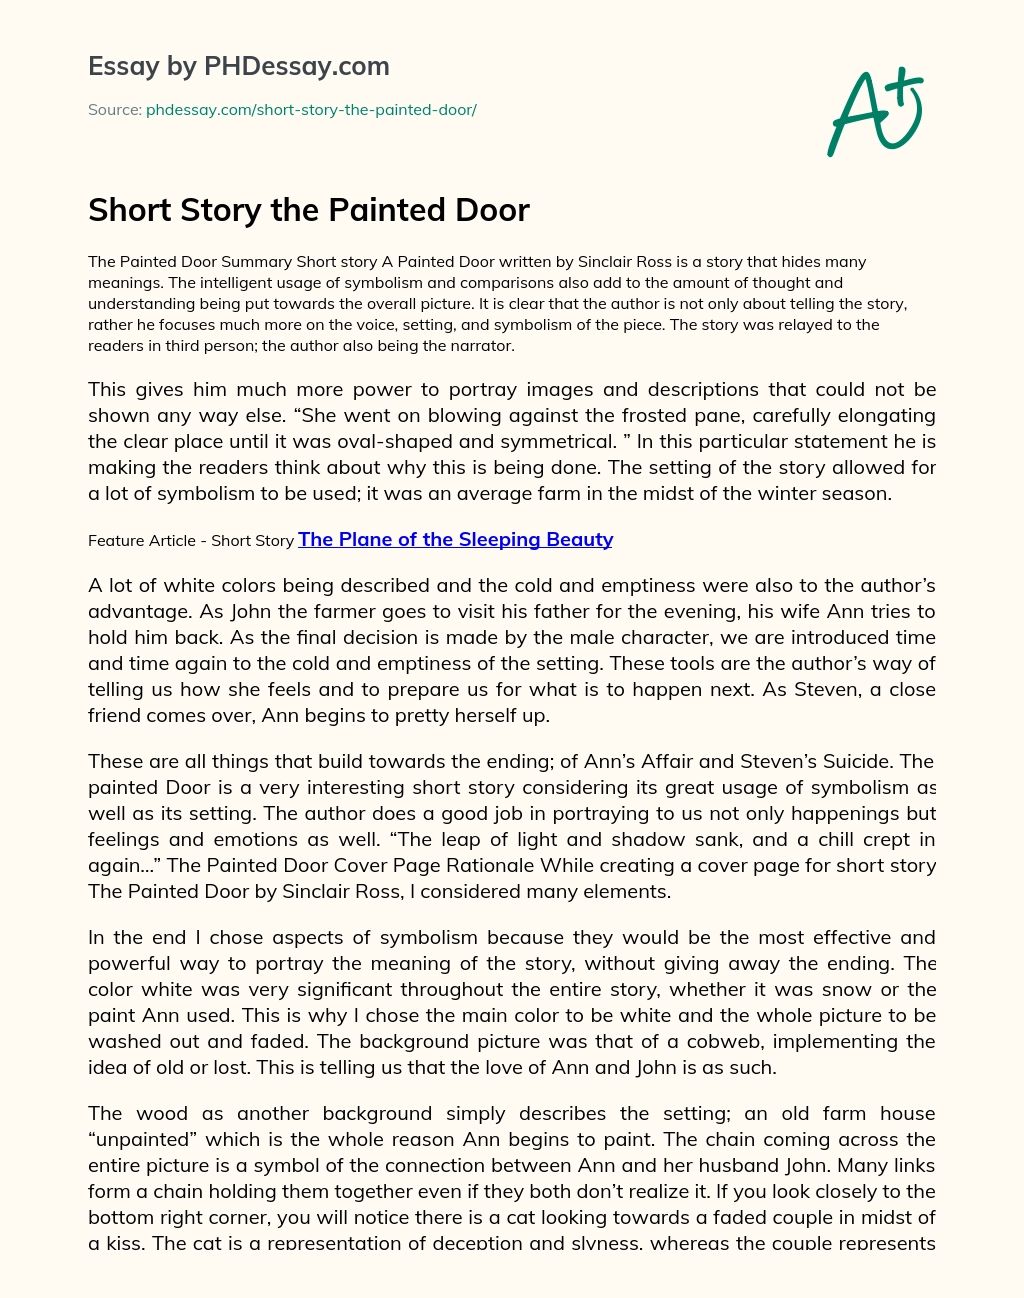 Реферат: The Painted Door